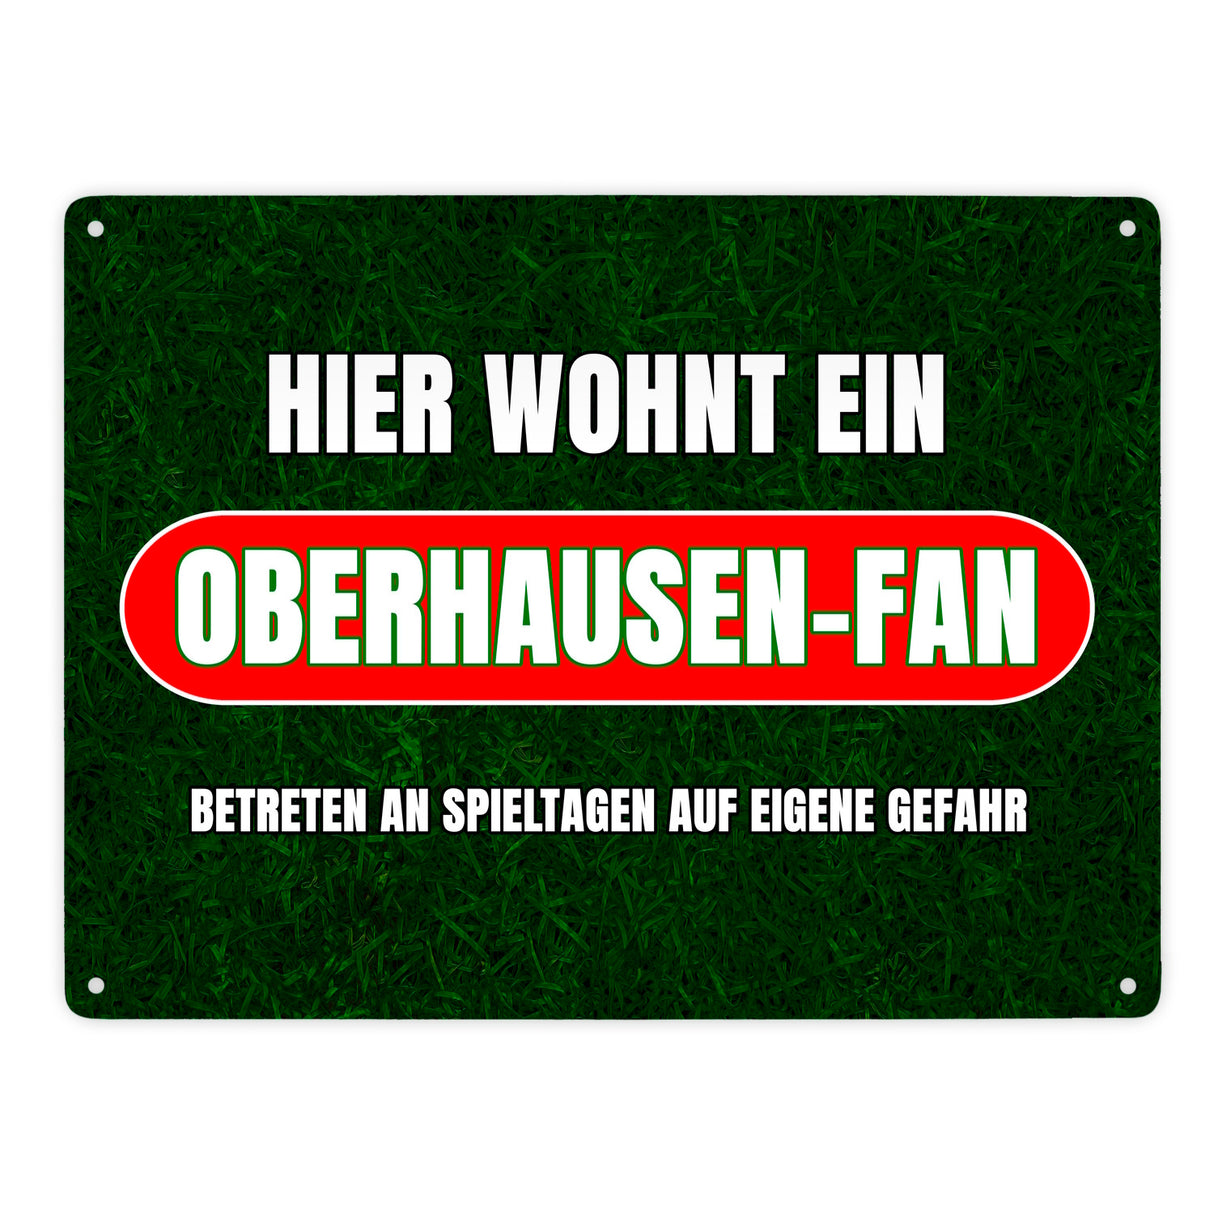 Hier wohnt ein Oberhausen-Fan Metallschild in 15x20 cm mit Rasenmotiv